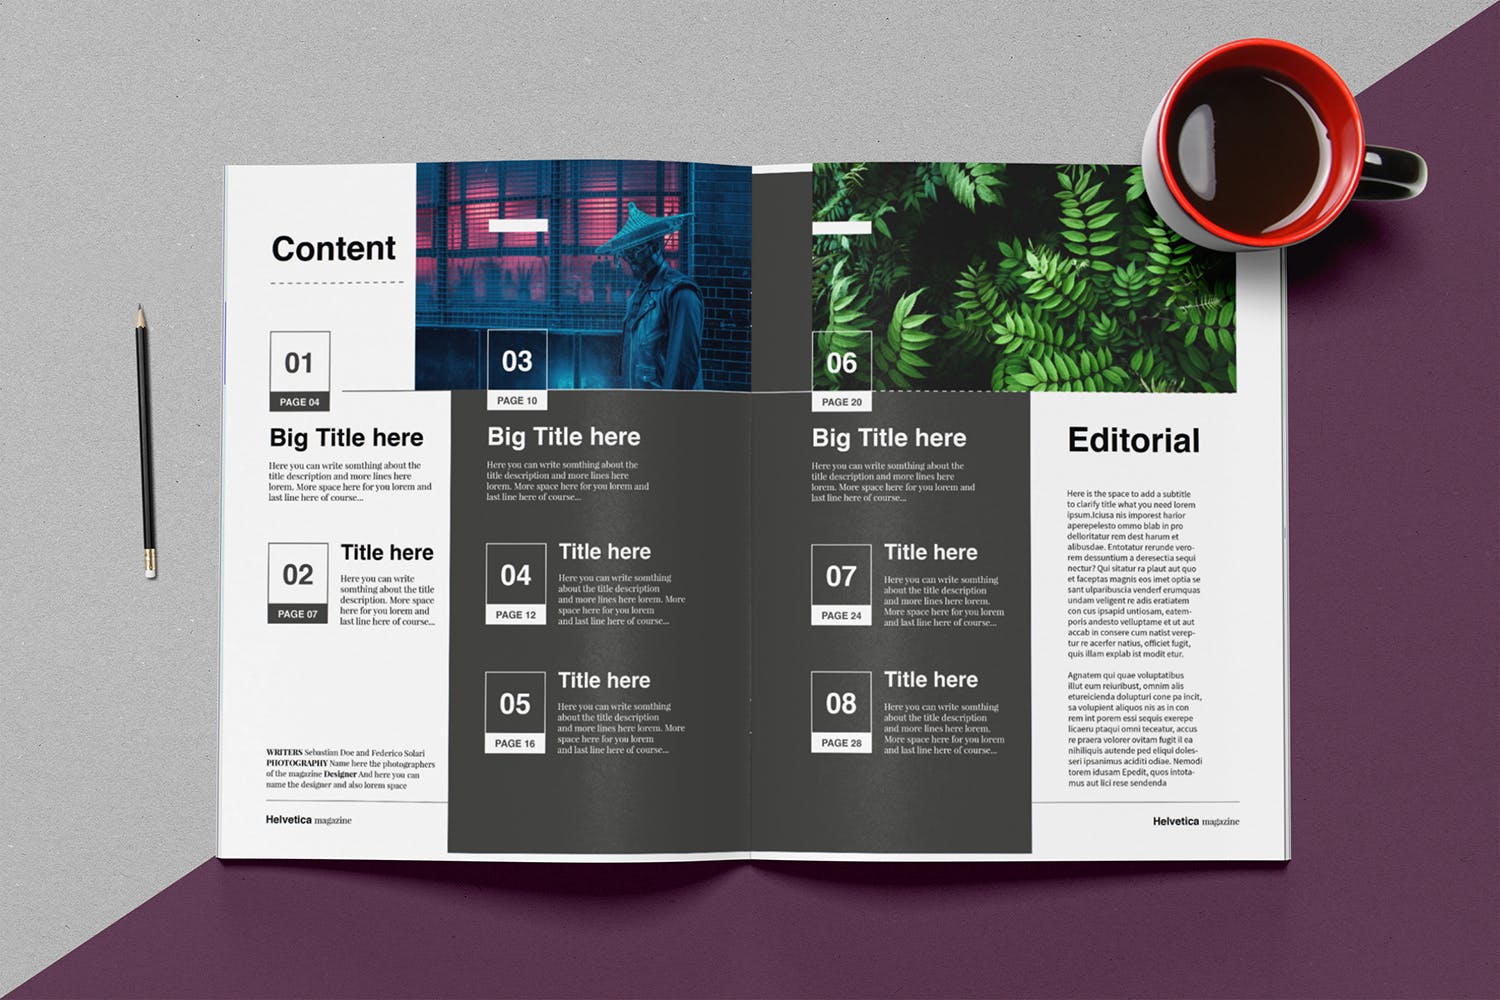 时尚行业产品评测杂志Indesign模板下载 Helvetica Magazine Indesign Template插图2